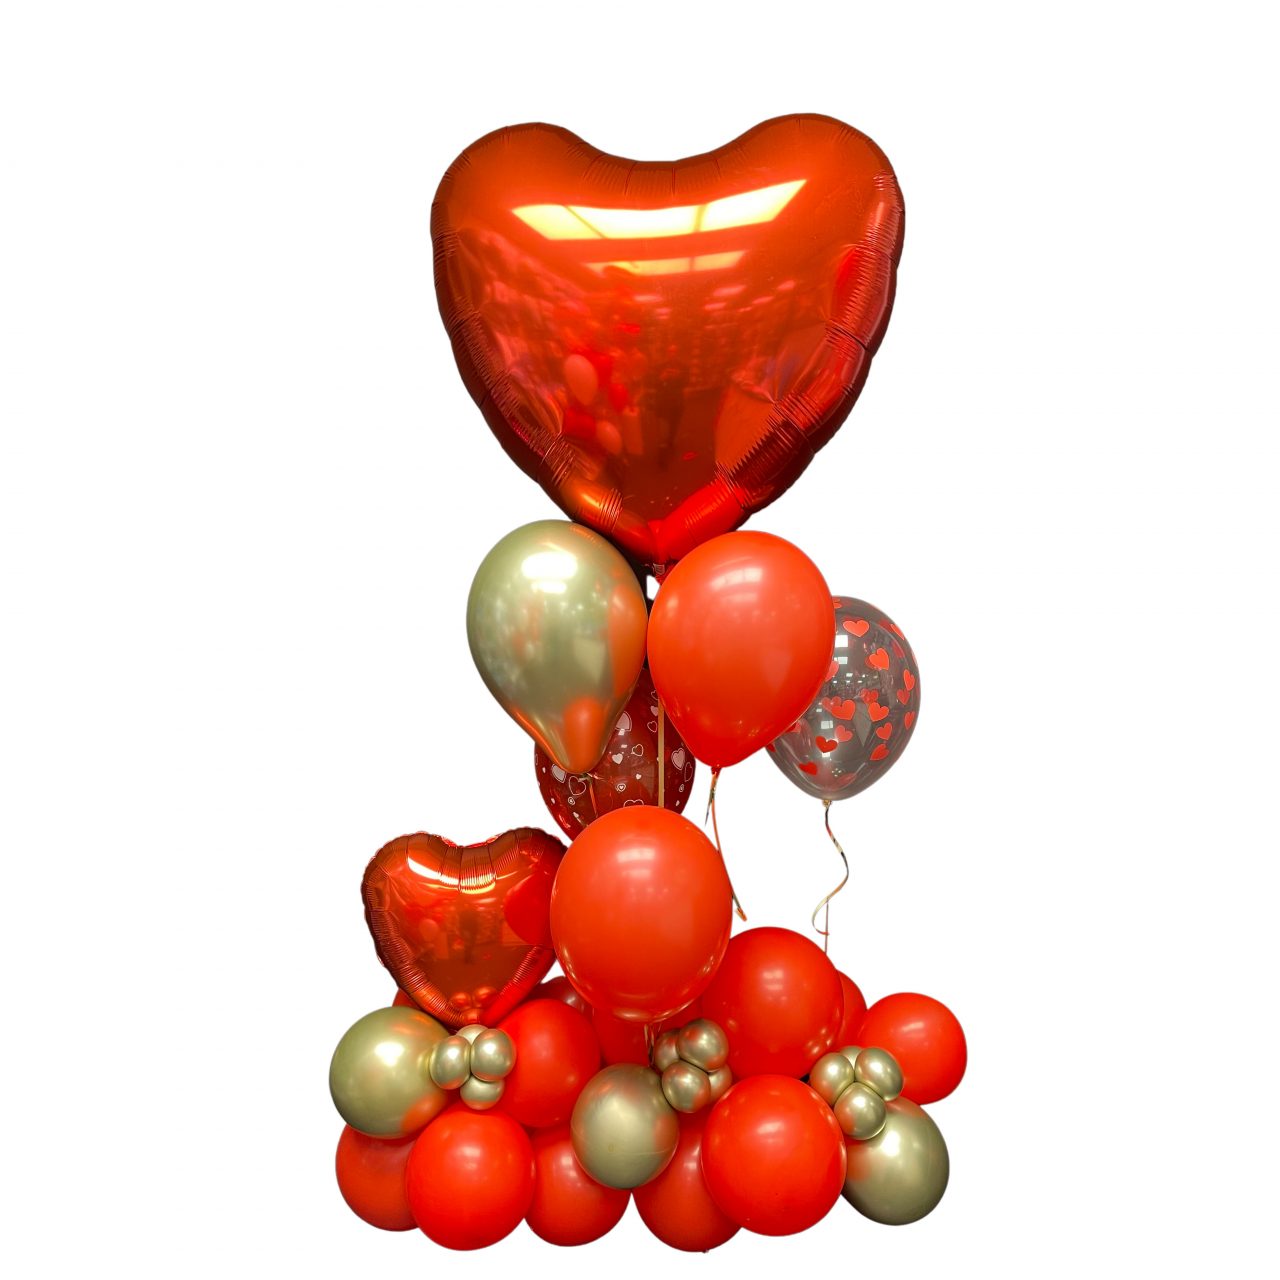 Botanist meel Kijkgat Valentijn - De Ballonnenkoning